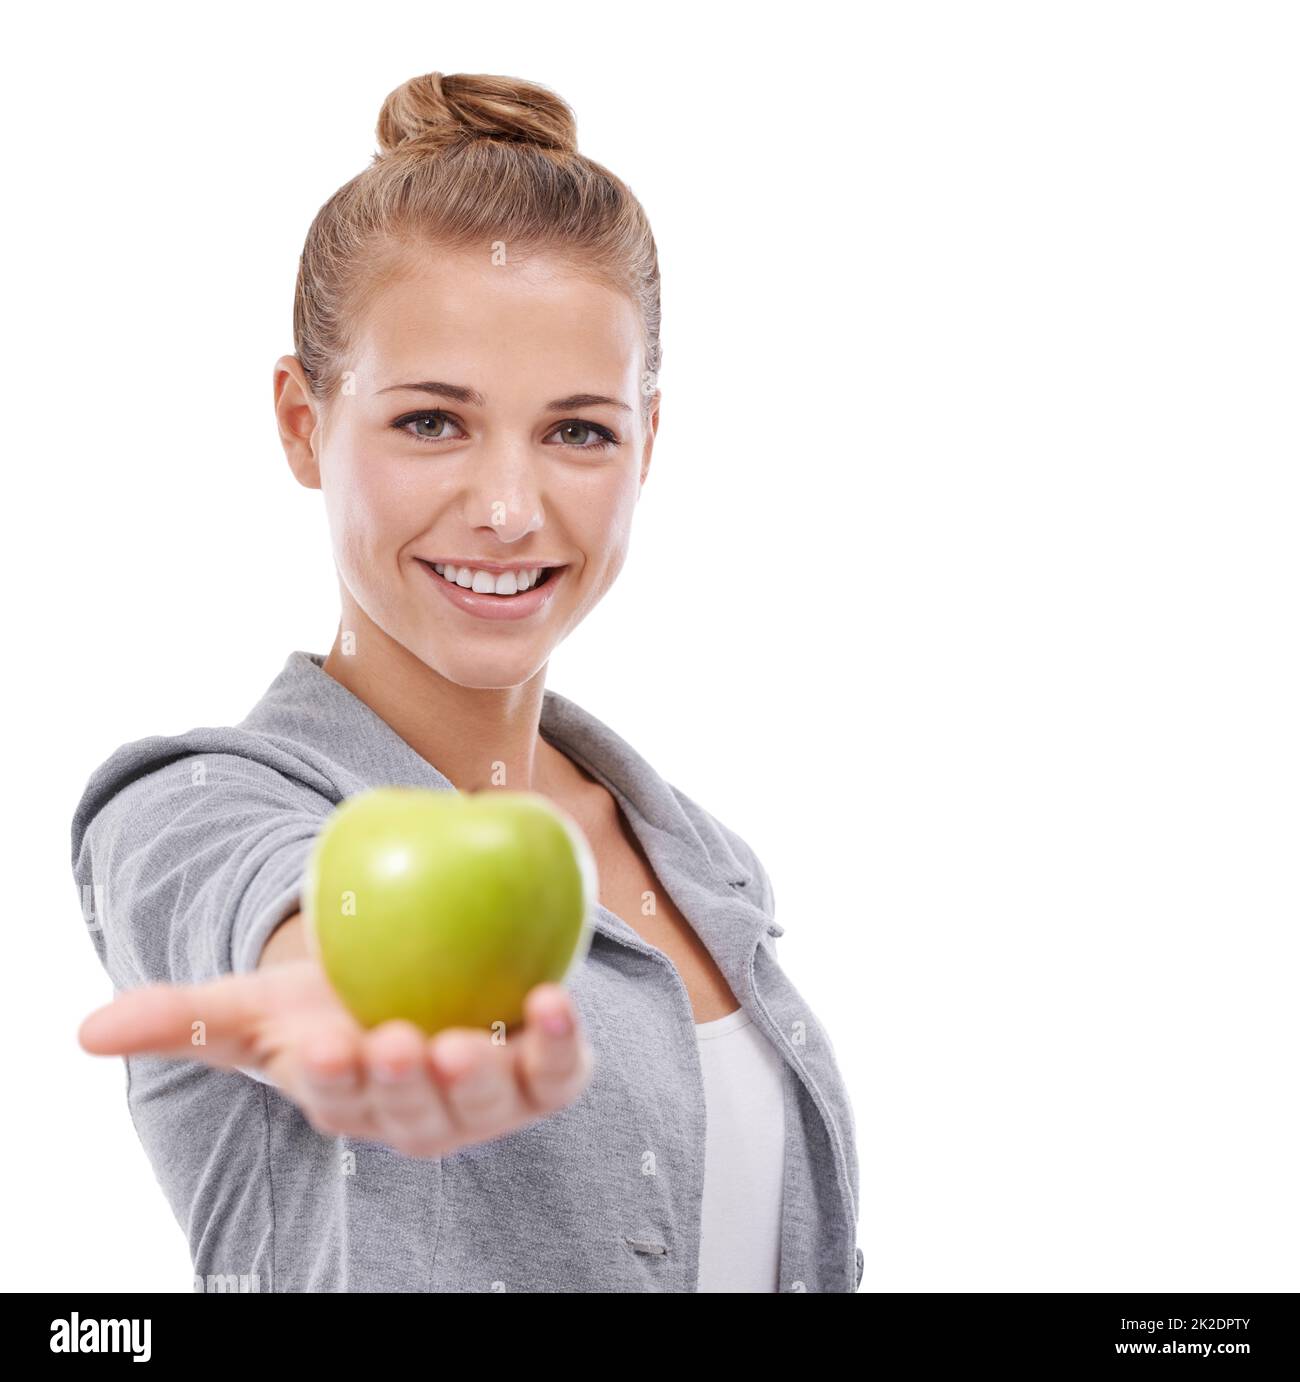 Frische Früchte für gesunde Haut. Eine junge Frau, die einen auf Weiß isolierten Apfel hält. Stockfoto